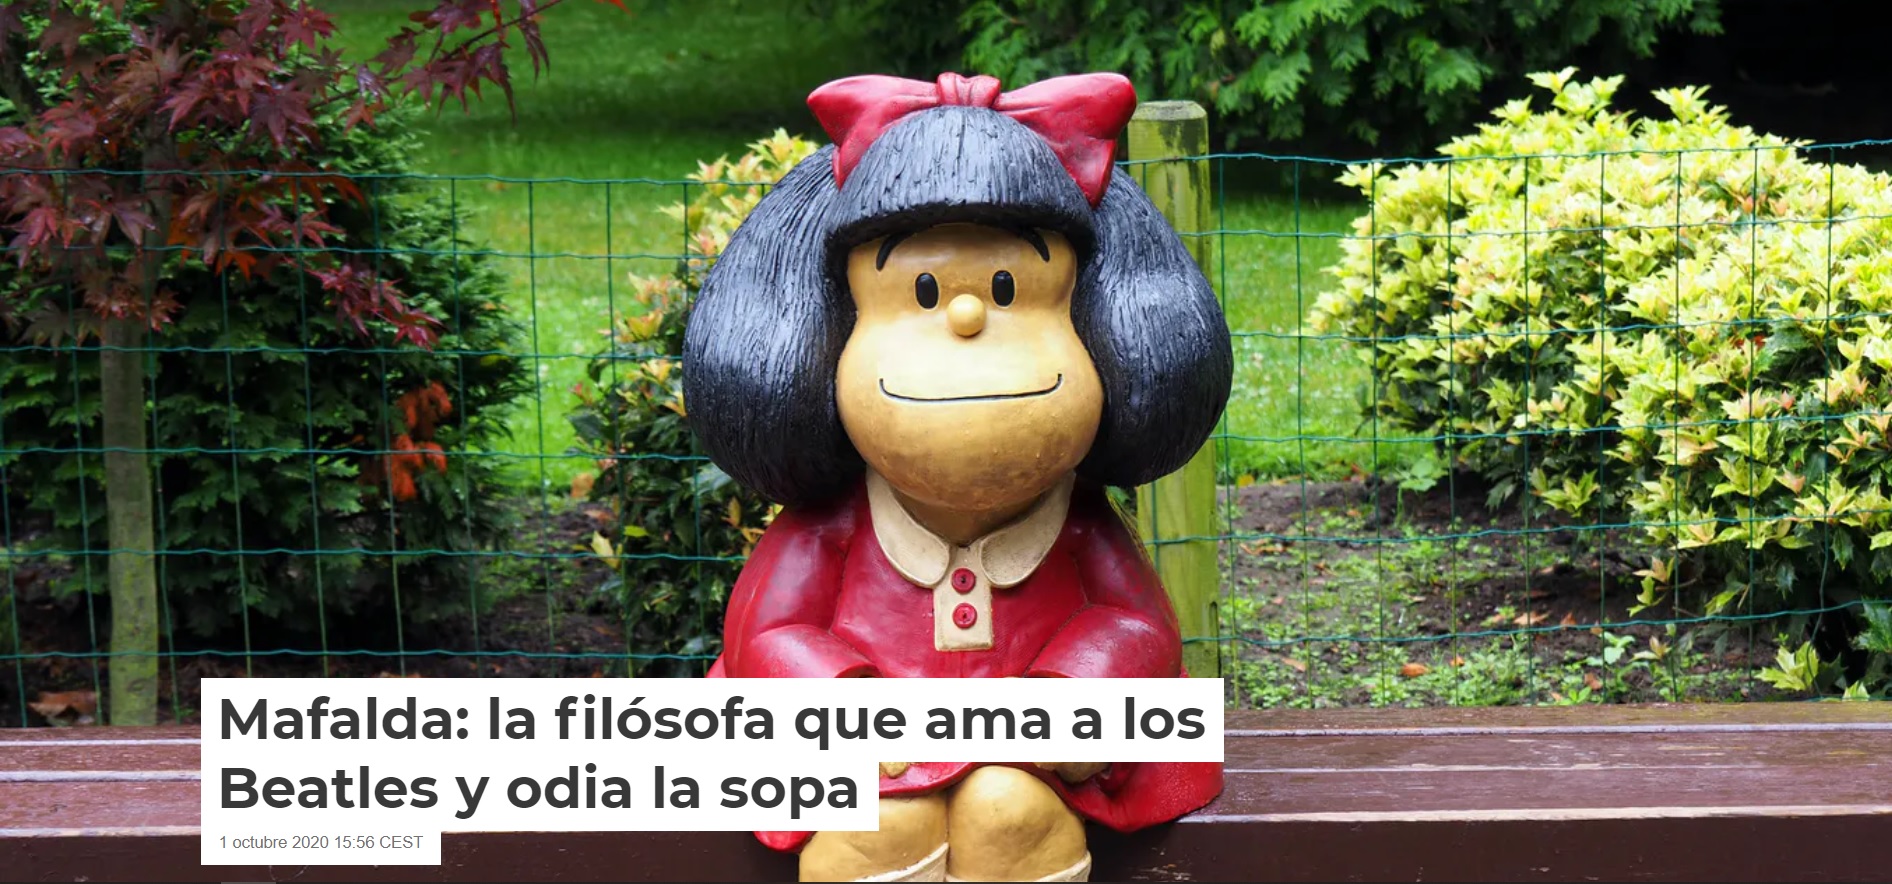 Mafalda: la filósofa que ama a los Beatl